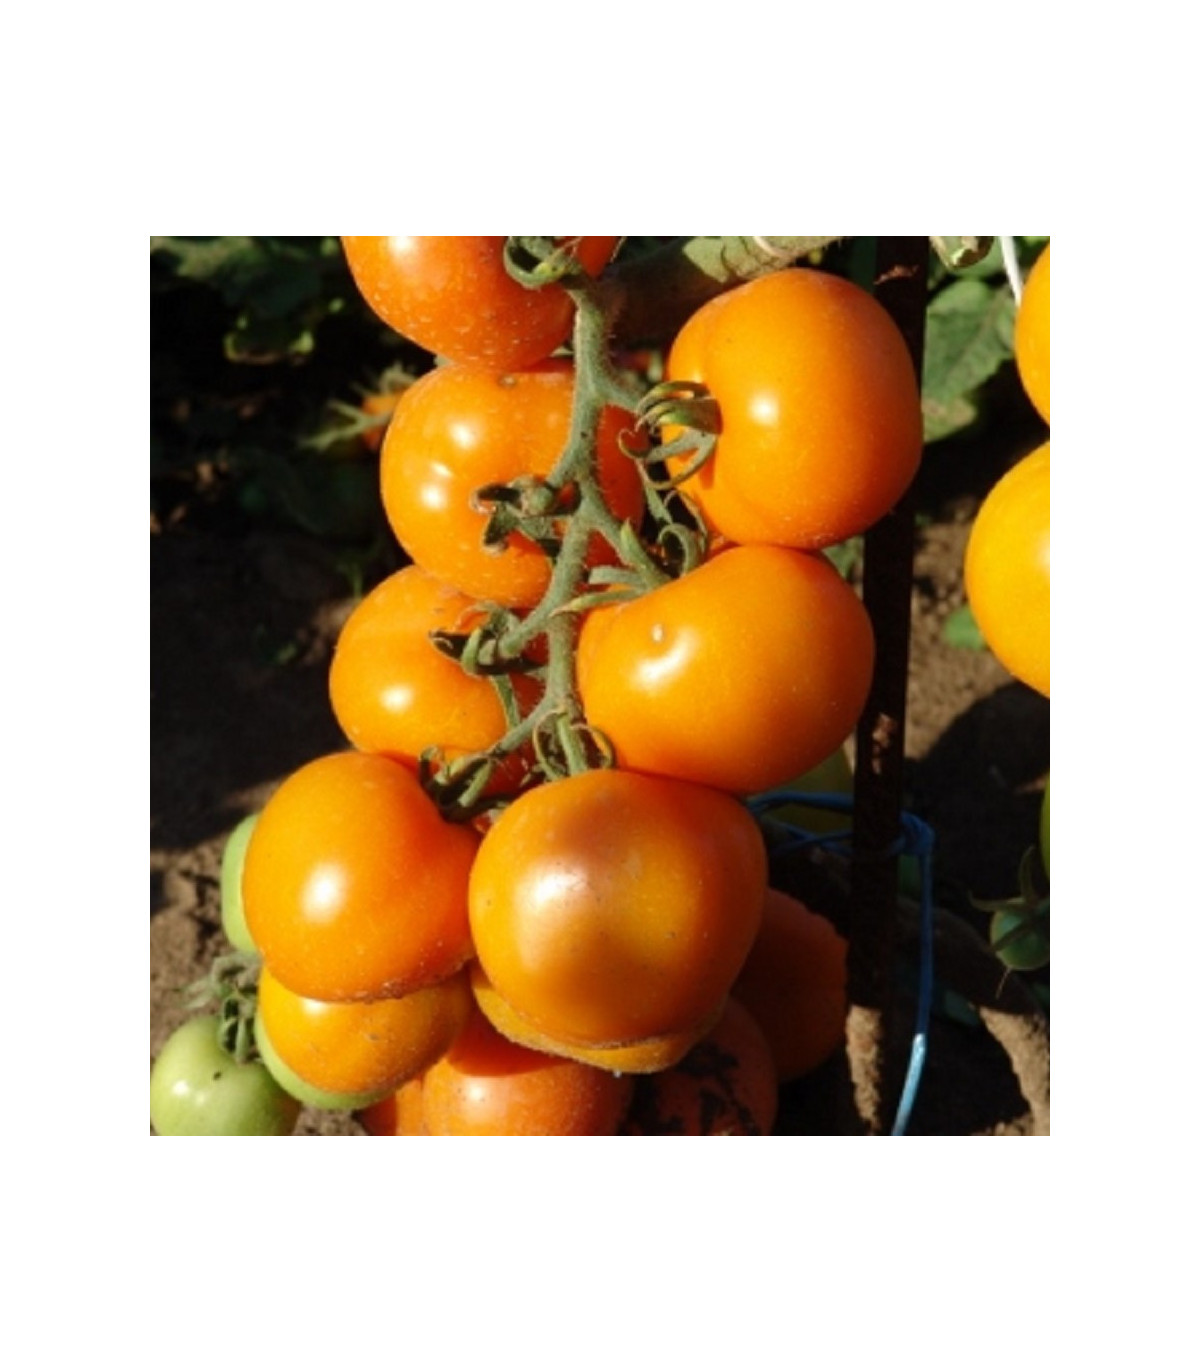 Rajče Zlatava - tyčkové rajče - Lycopersicon Esculentum - semena rajčat - 15 Ks